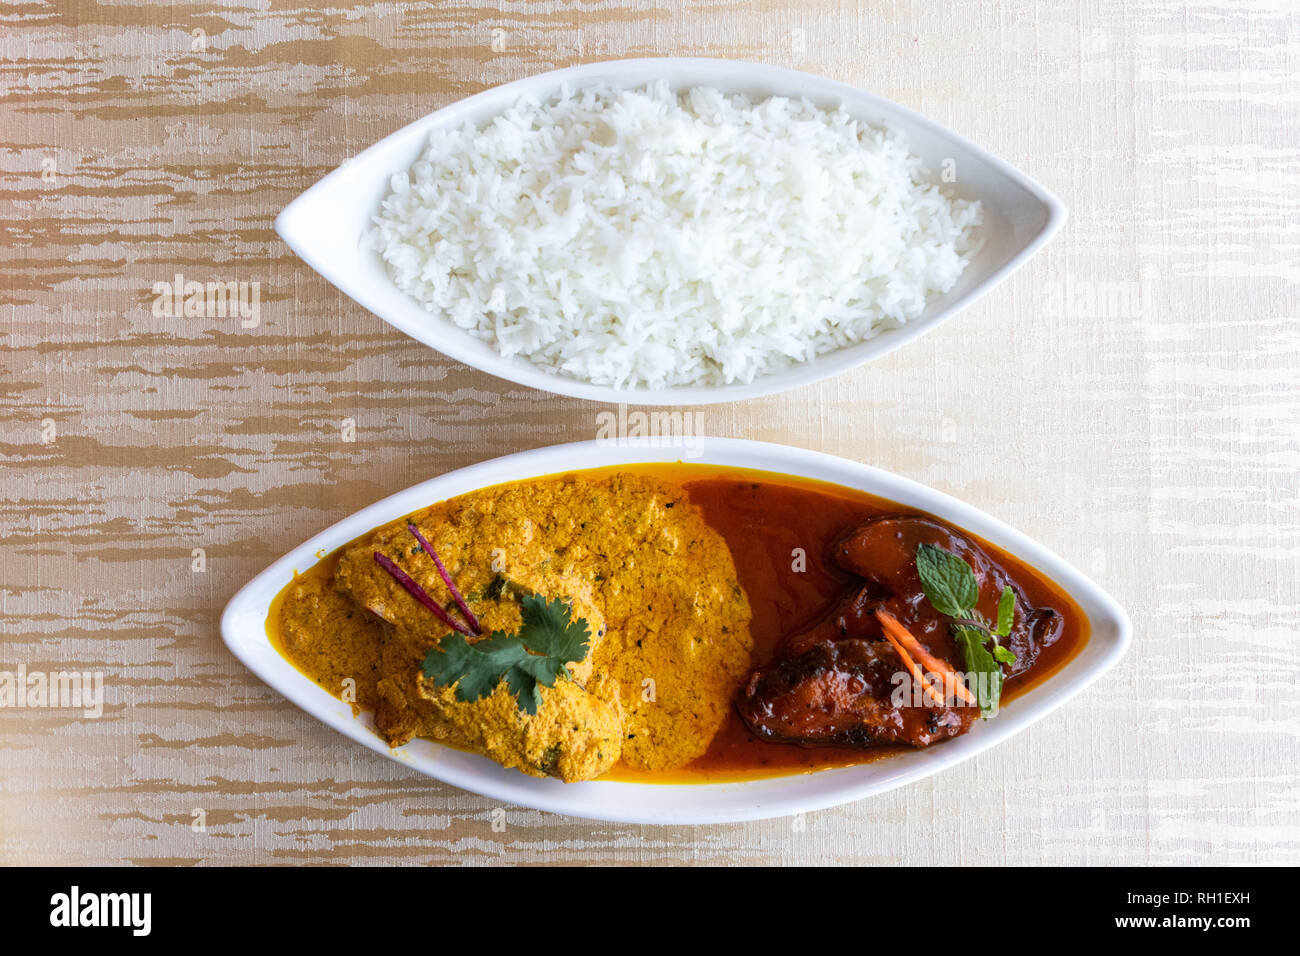 Katla Macher Ghaus ist eine berühmte Bengali Fisch Curry in zwei gegensätzliche Bratensoßen - Ein süßlich stechend und die andere würzige und spritzig serviert. Stockfoto